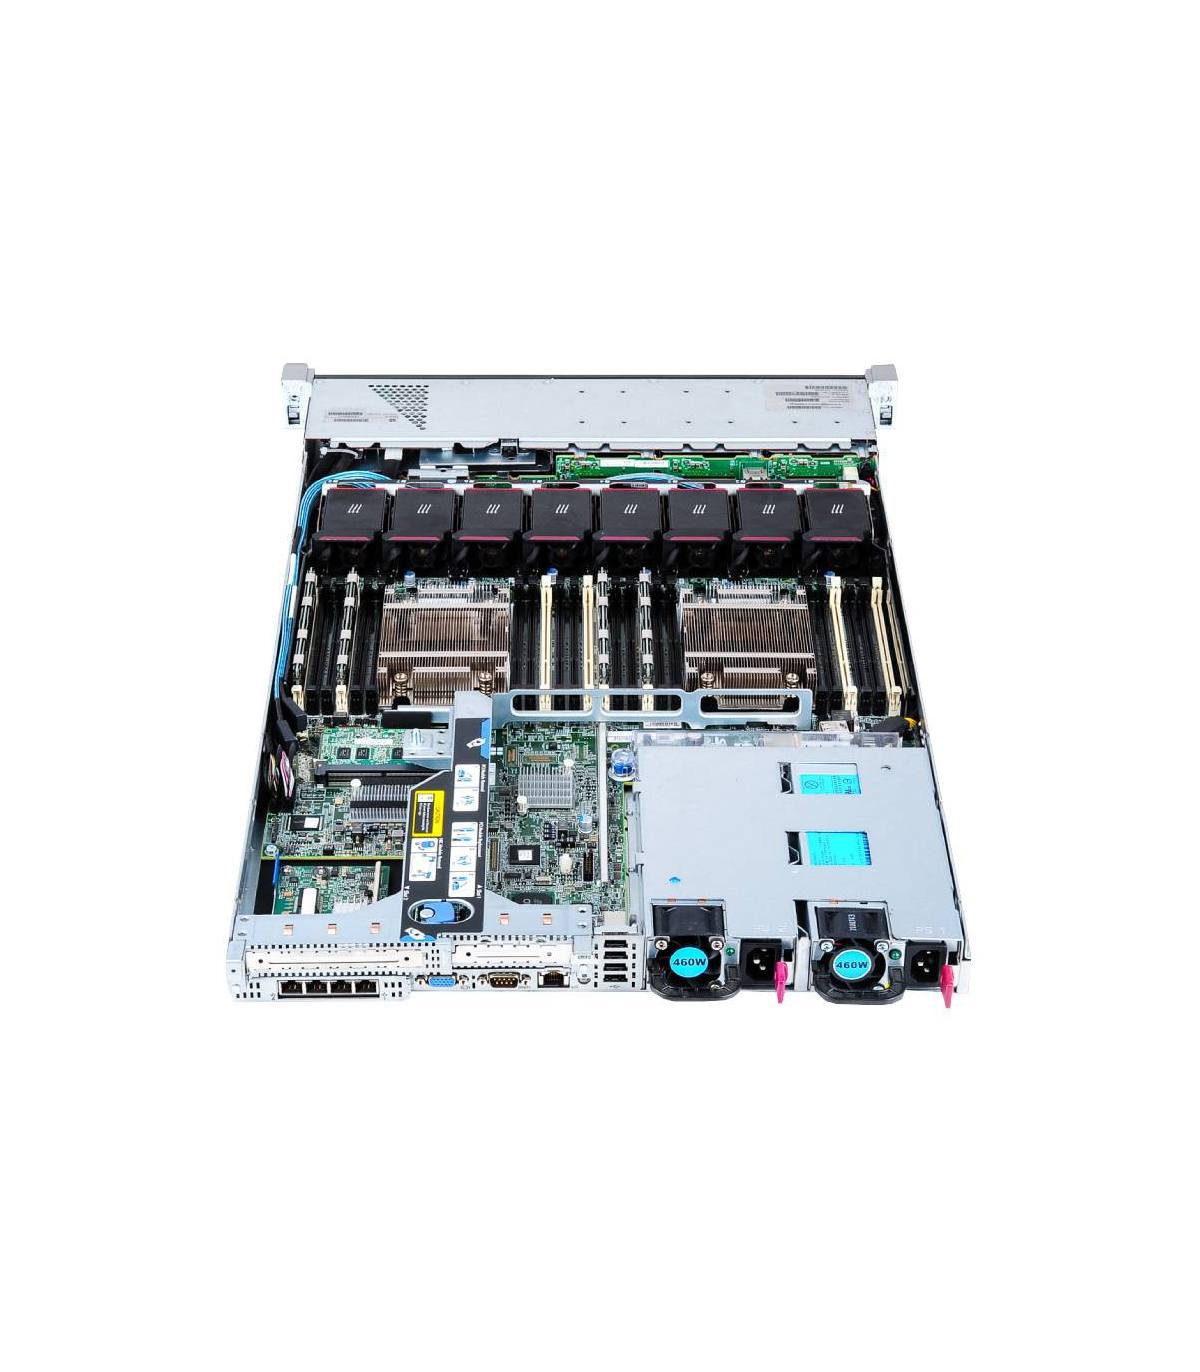 HP 360P G8 2X4C E5-2609 2.40 GHz 16GB P420 512MB 8X2,5" iLO4STD 2X460W 331FLR